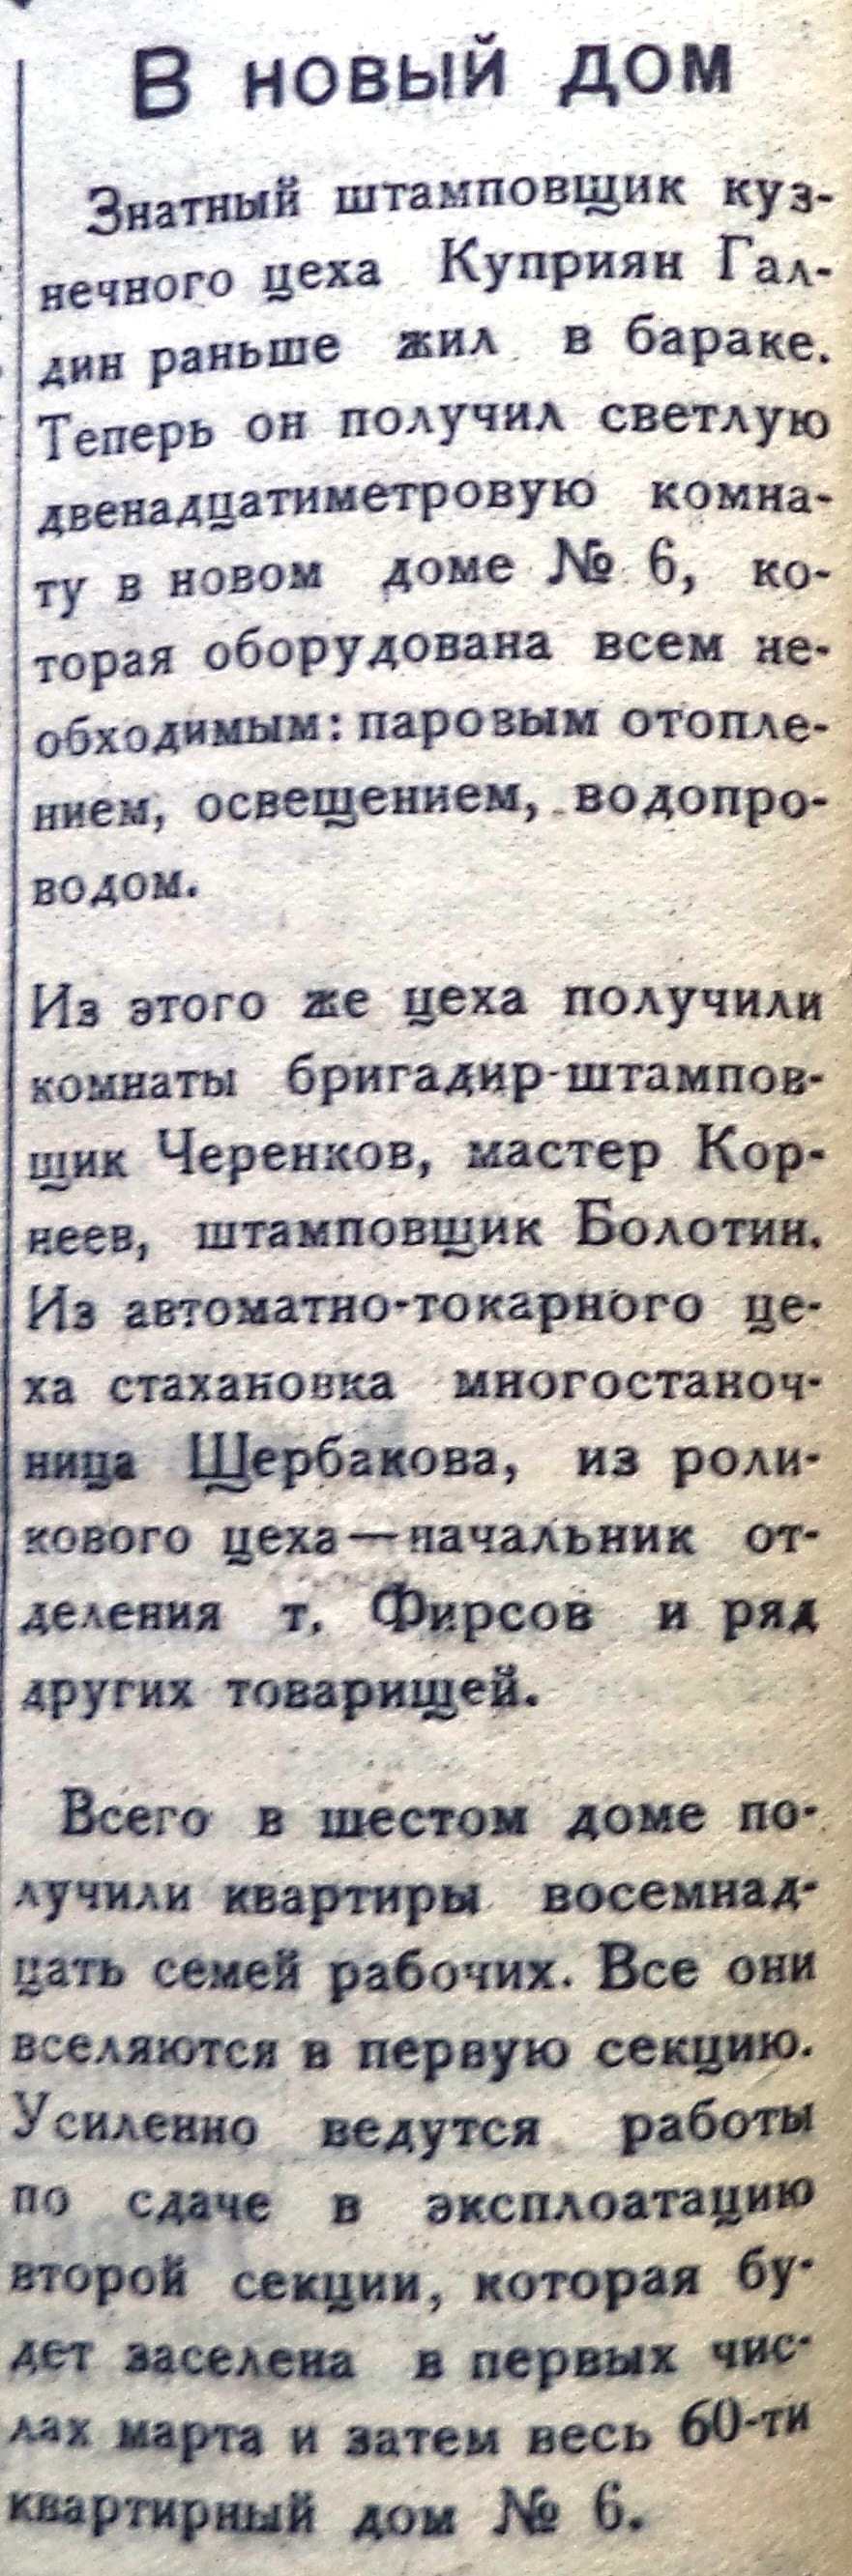 Штамповщиков-ФОТО-08-За сталинский план-1949-27 января-min